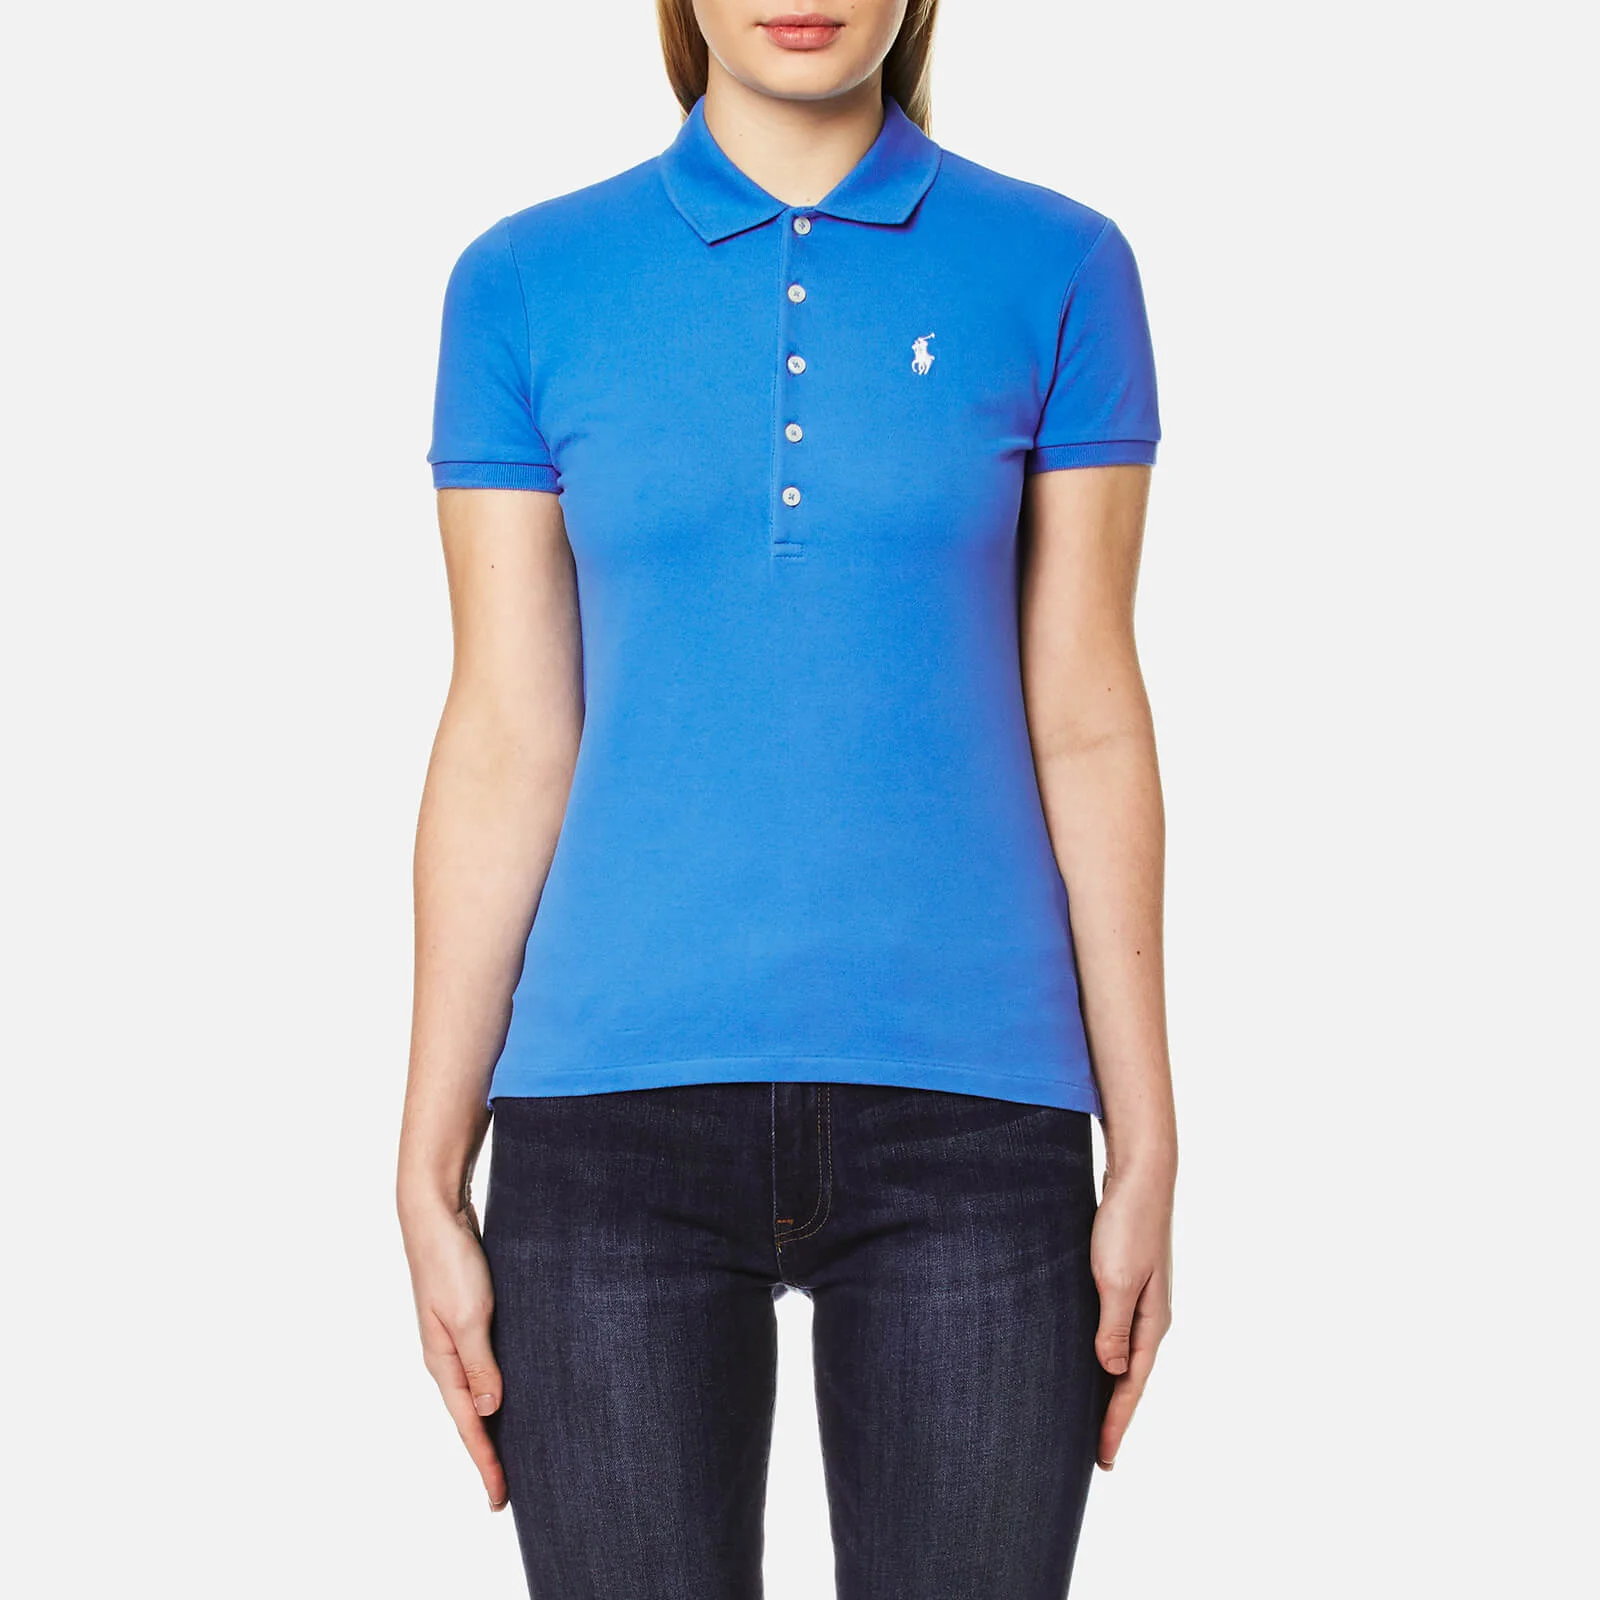 Polo Ralph Lauren Women's Julie Polo Shirt - Brilliant Blue Image 1